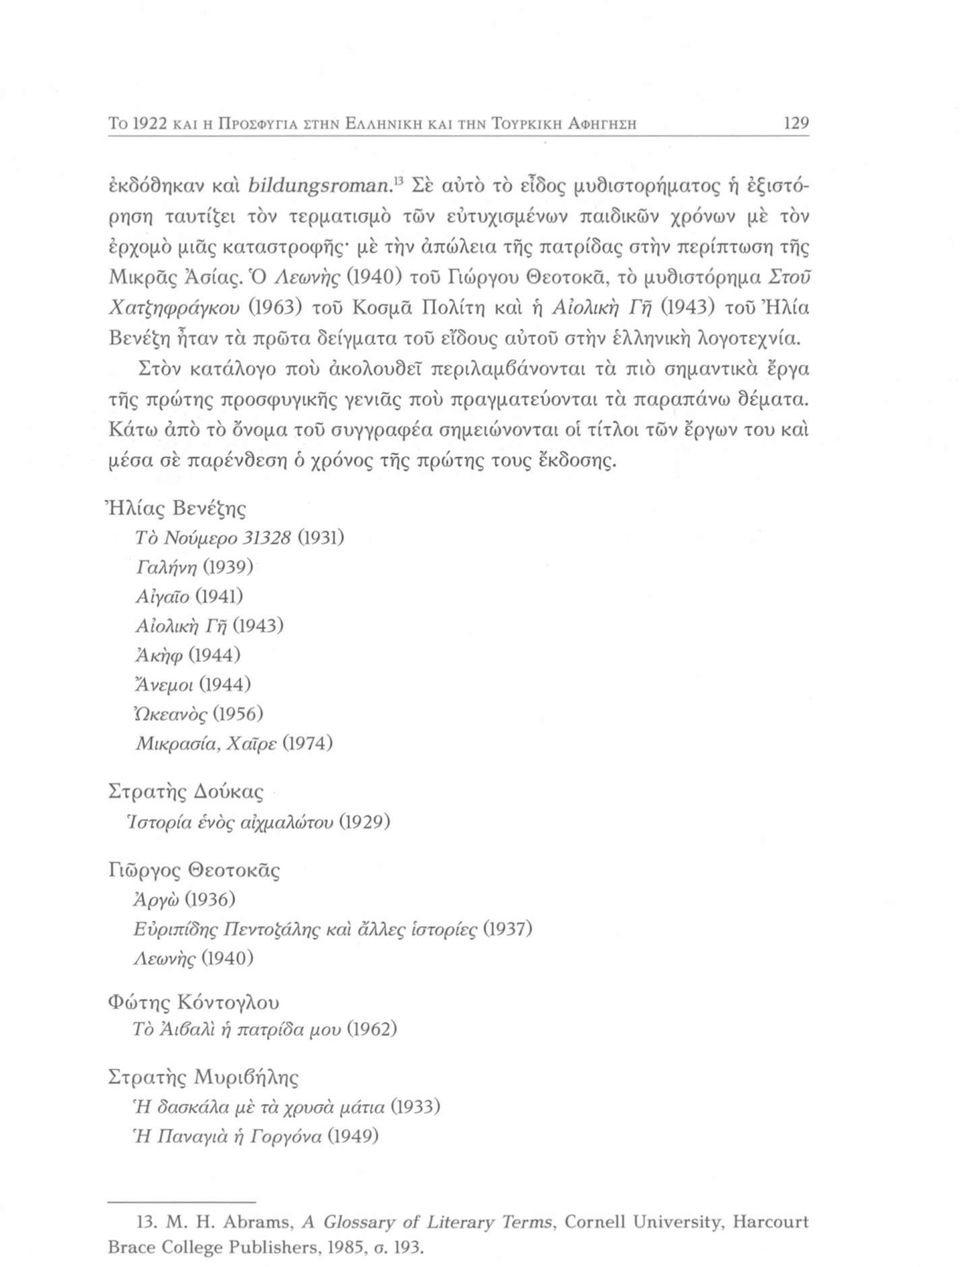 Ό Αεωνης (1940) του Γιώργου Θεοτοκά, το μυδιστόρημα Στοϋ Χατζηφράγκου (1963) τοΰ Κοσμά Πολίτη και ή Αιολική Γη (1943) τοϋ Ήλία Βενέζη ήταν τα πρώτα δείγματα τοΰ είδους αύτοΰ στην έλληνική λογοτεχνία.